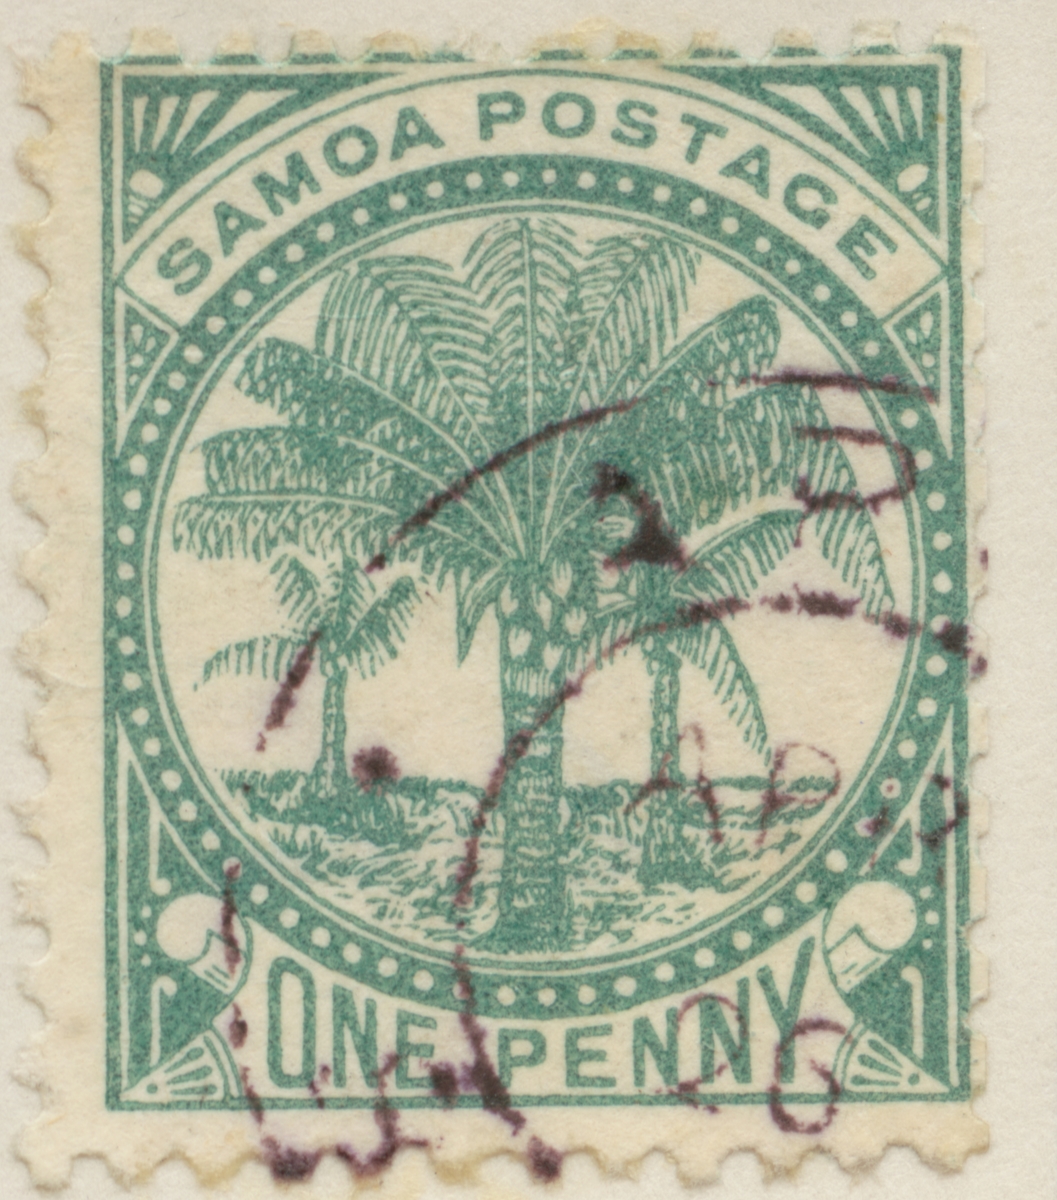 Frimärke ur Gösta Bodmans filatelistiska motivsamling, påbörjad 1950.
Frimärke från Samoaöarna, 1887. Motiv av kokospalmer.